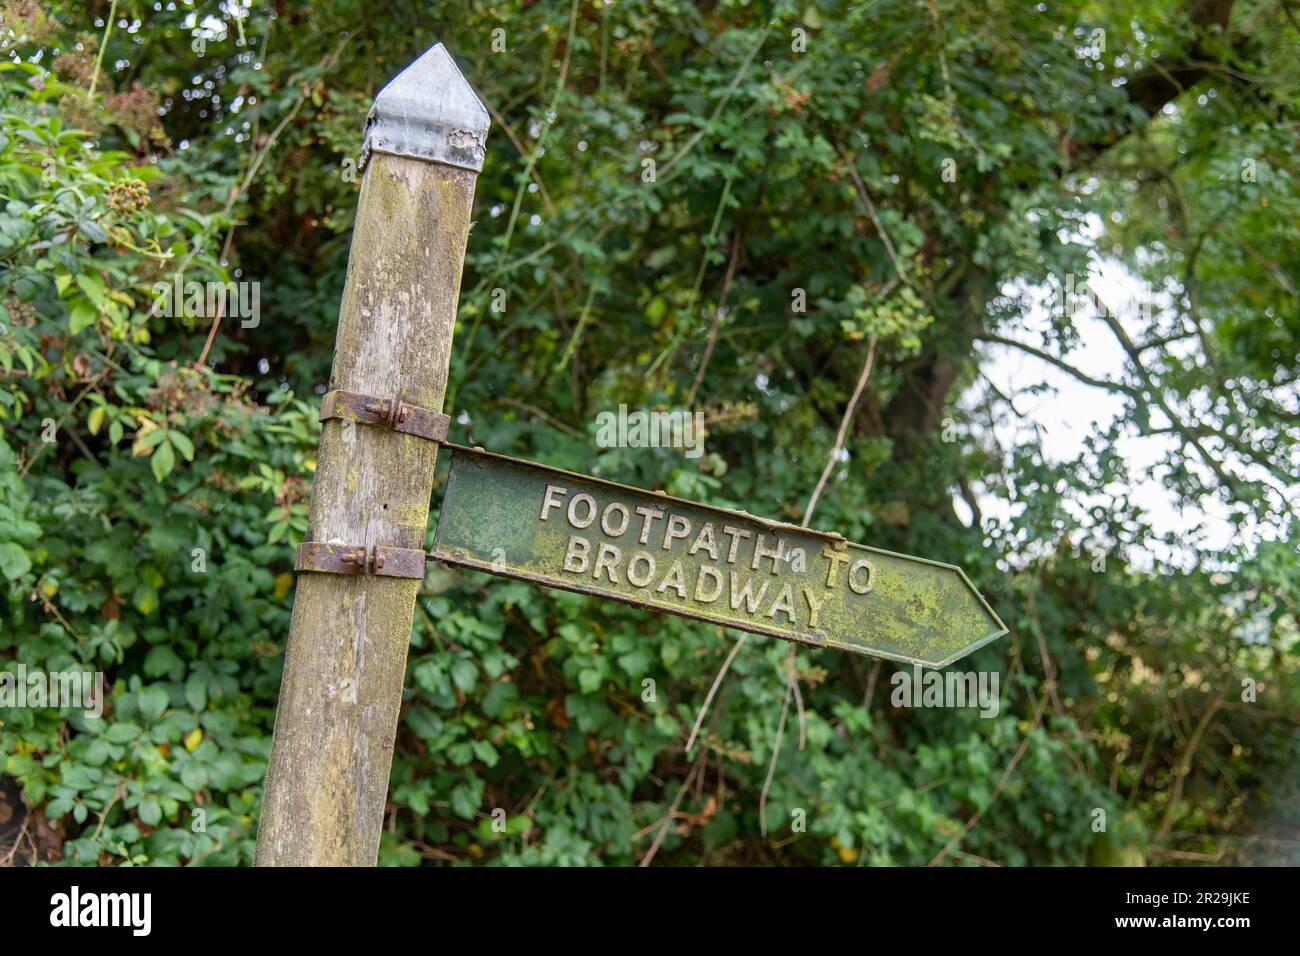 Nahaufnahme eines schiefen Holzmasts mit einem Schild, das den Fußweg zum Broadway, Cotswolds, Großbritannien inmitten von grünen Bäumen und Büschen anzeigt Stockfoto